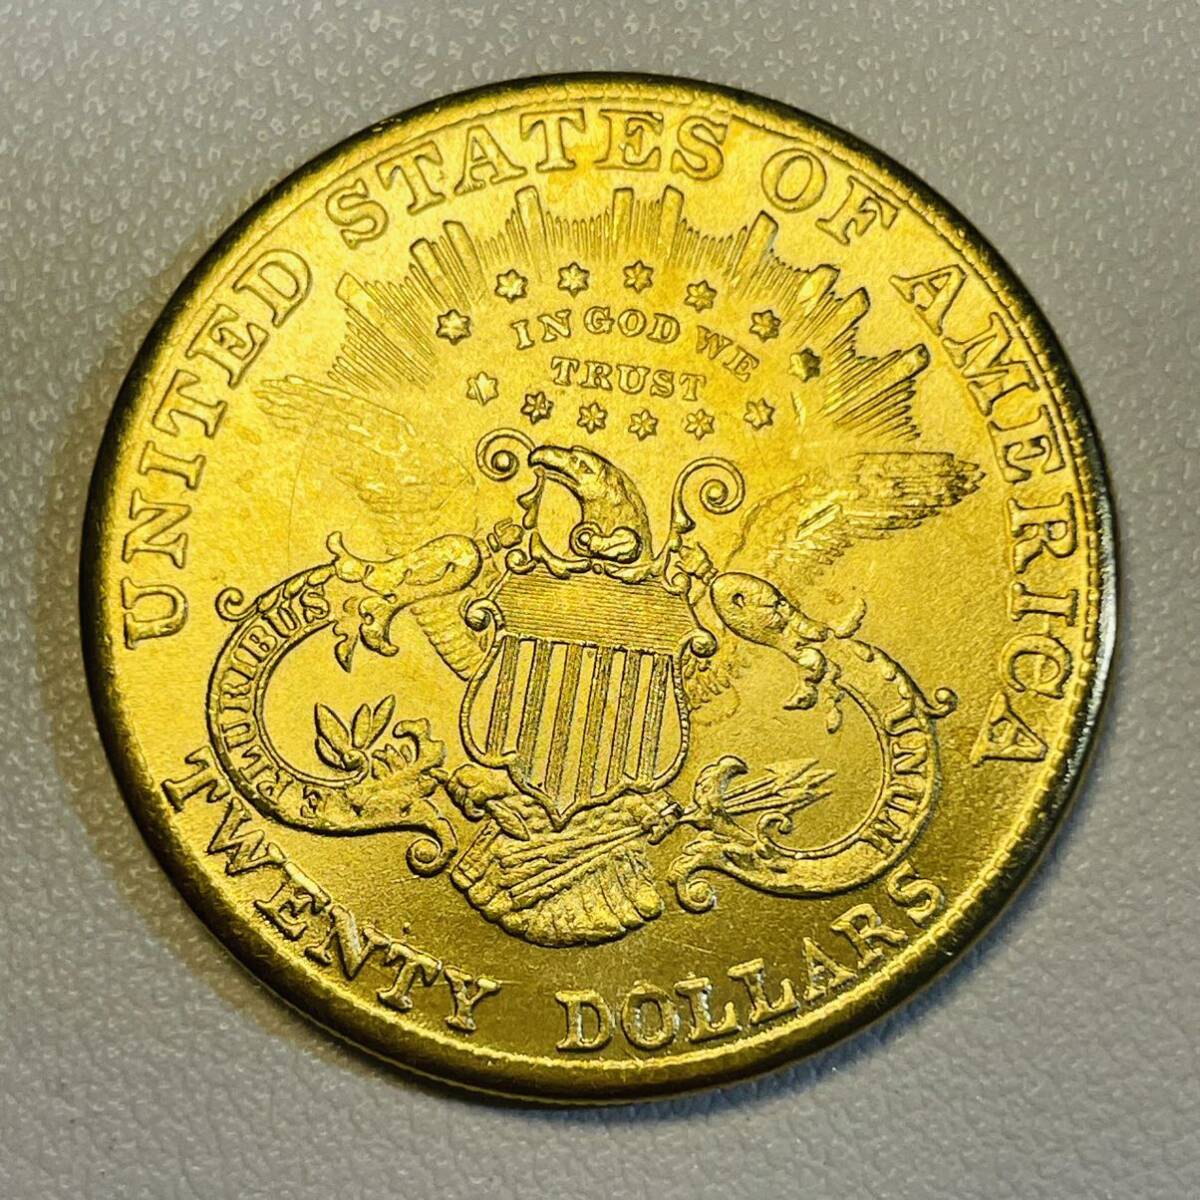 アメリカ 硬貨 古銭 自由の女神 1885年 ハクトウワシ 13の星 独立十三州 盾 オリーブの枝 コイン 重17.29g 金貨 の画像1